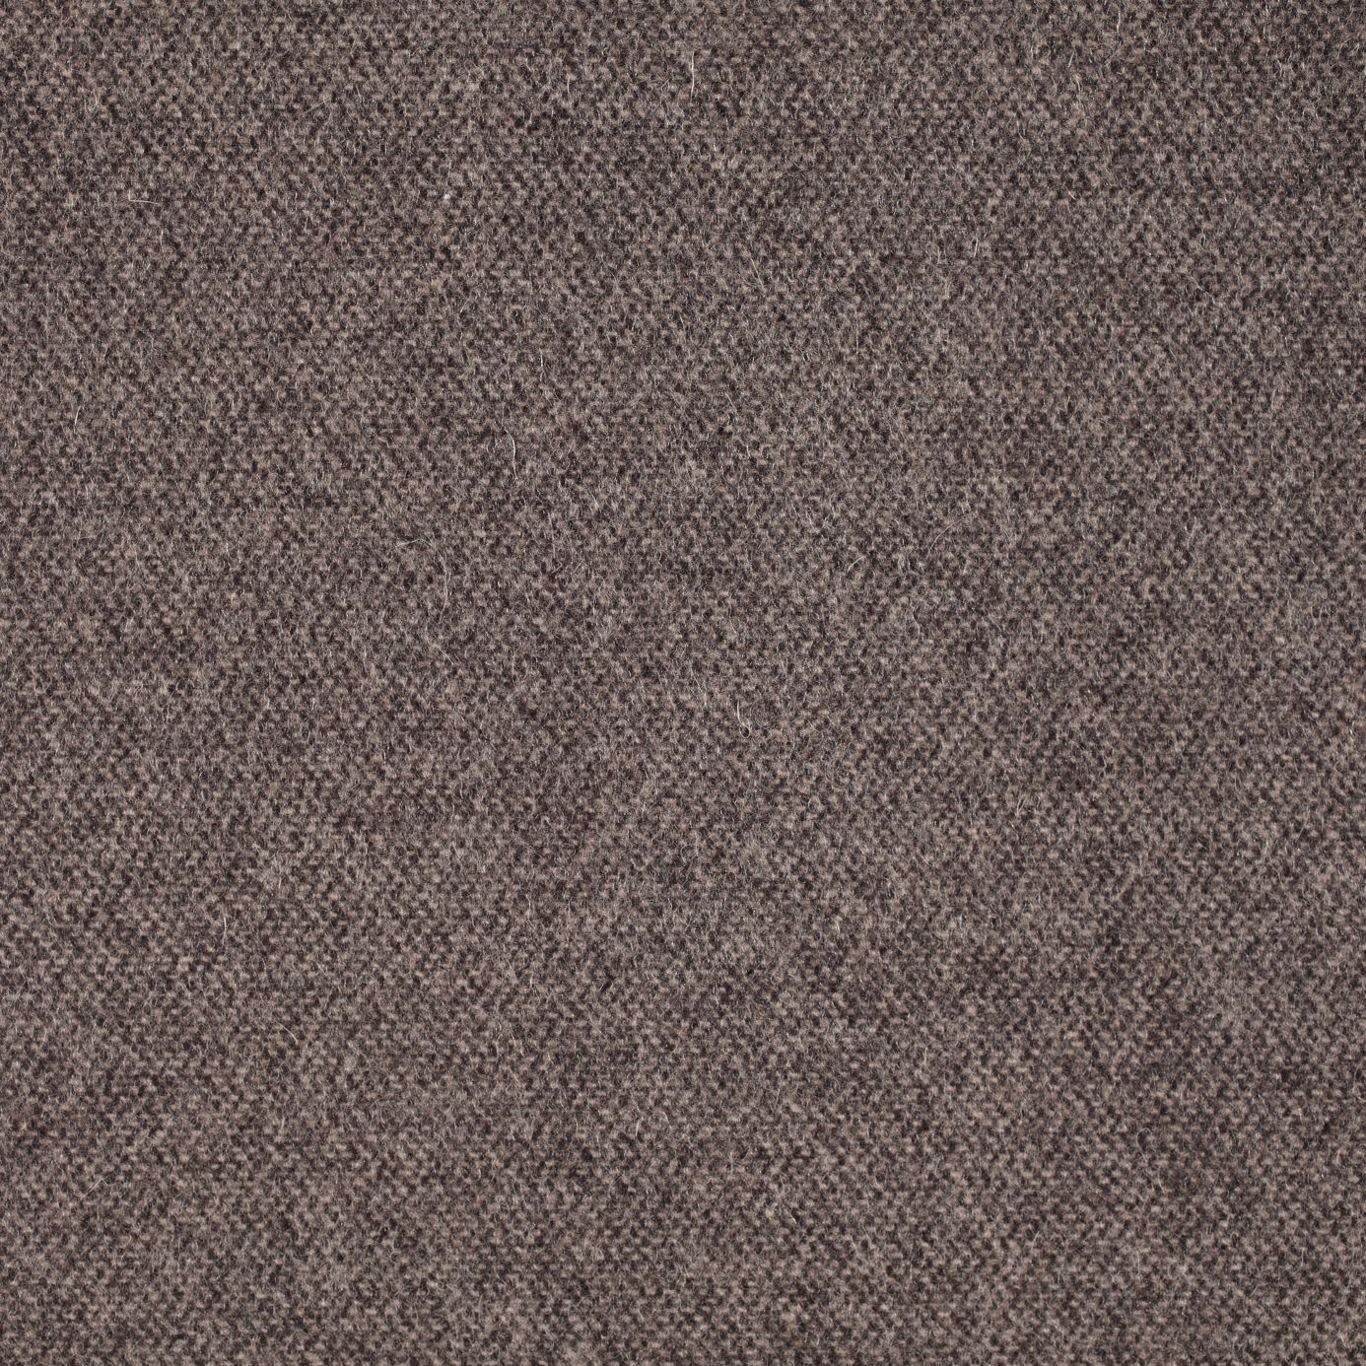 Byron Wool Plains Espresso Fabric by SAN